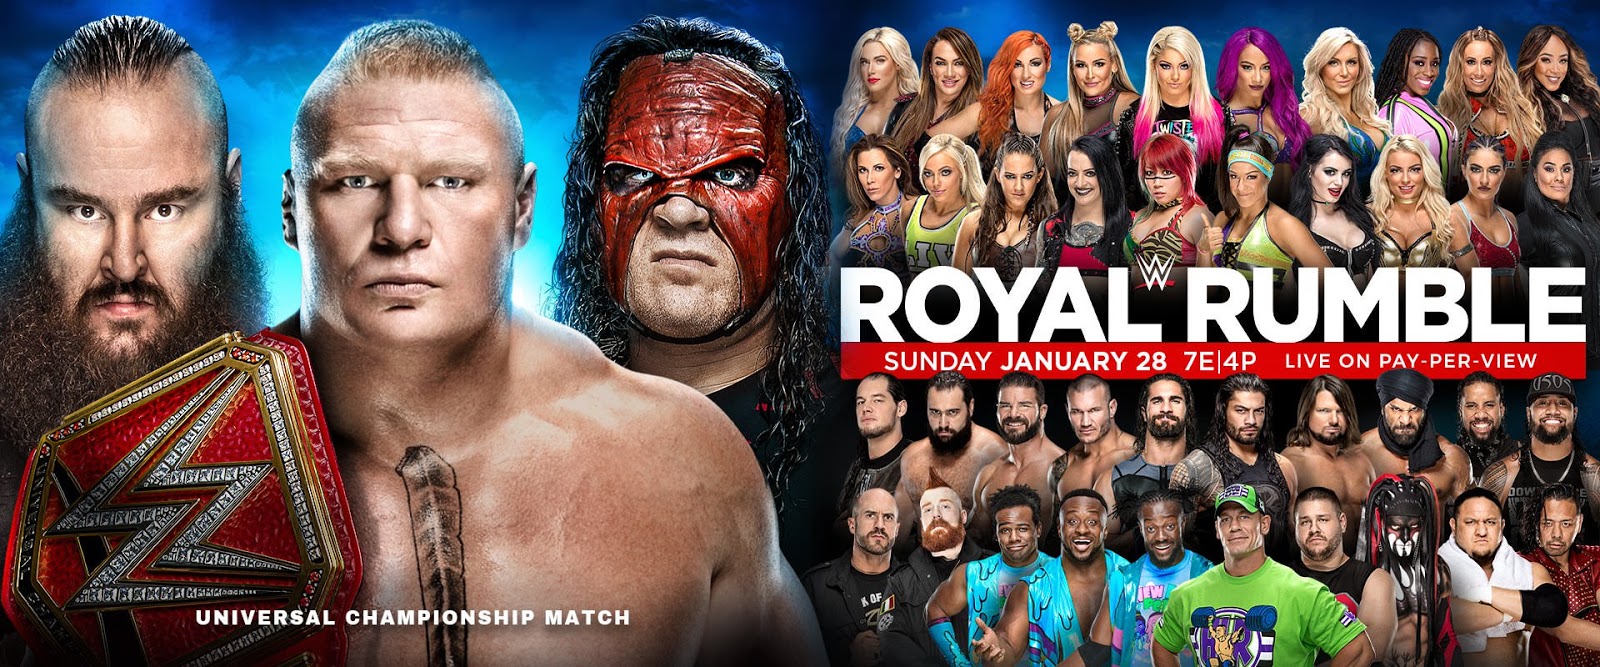 2018 Royal Rumble Match Predictions